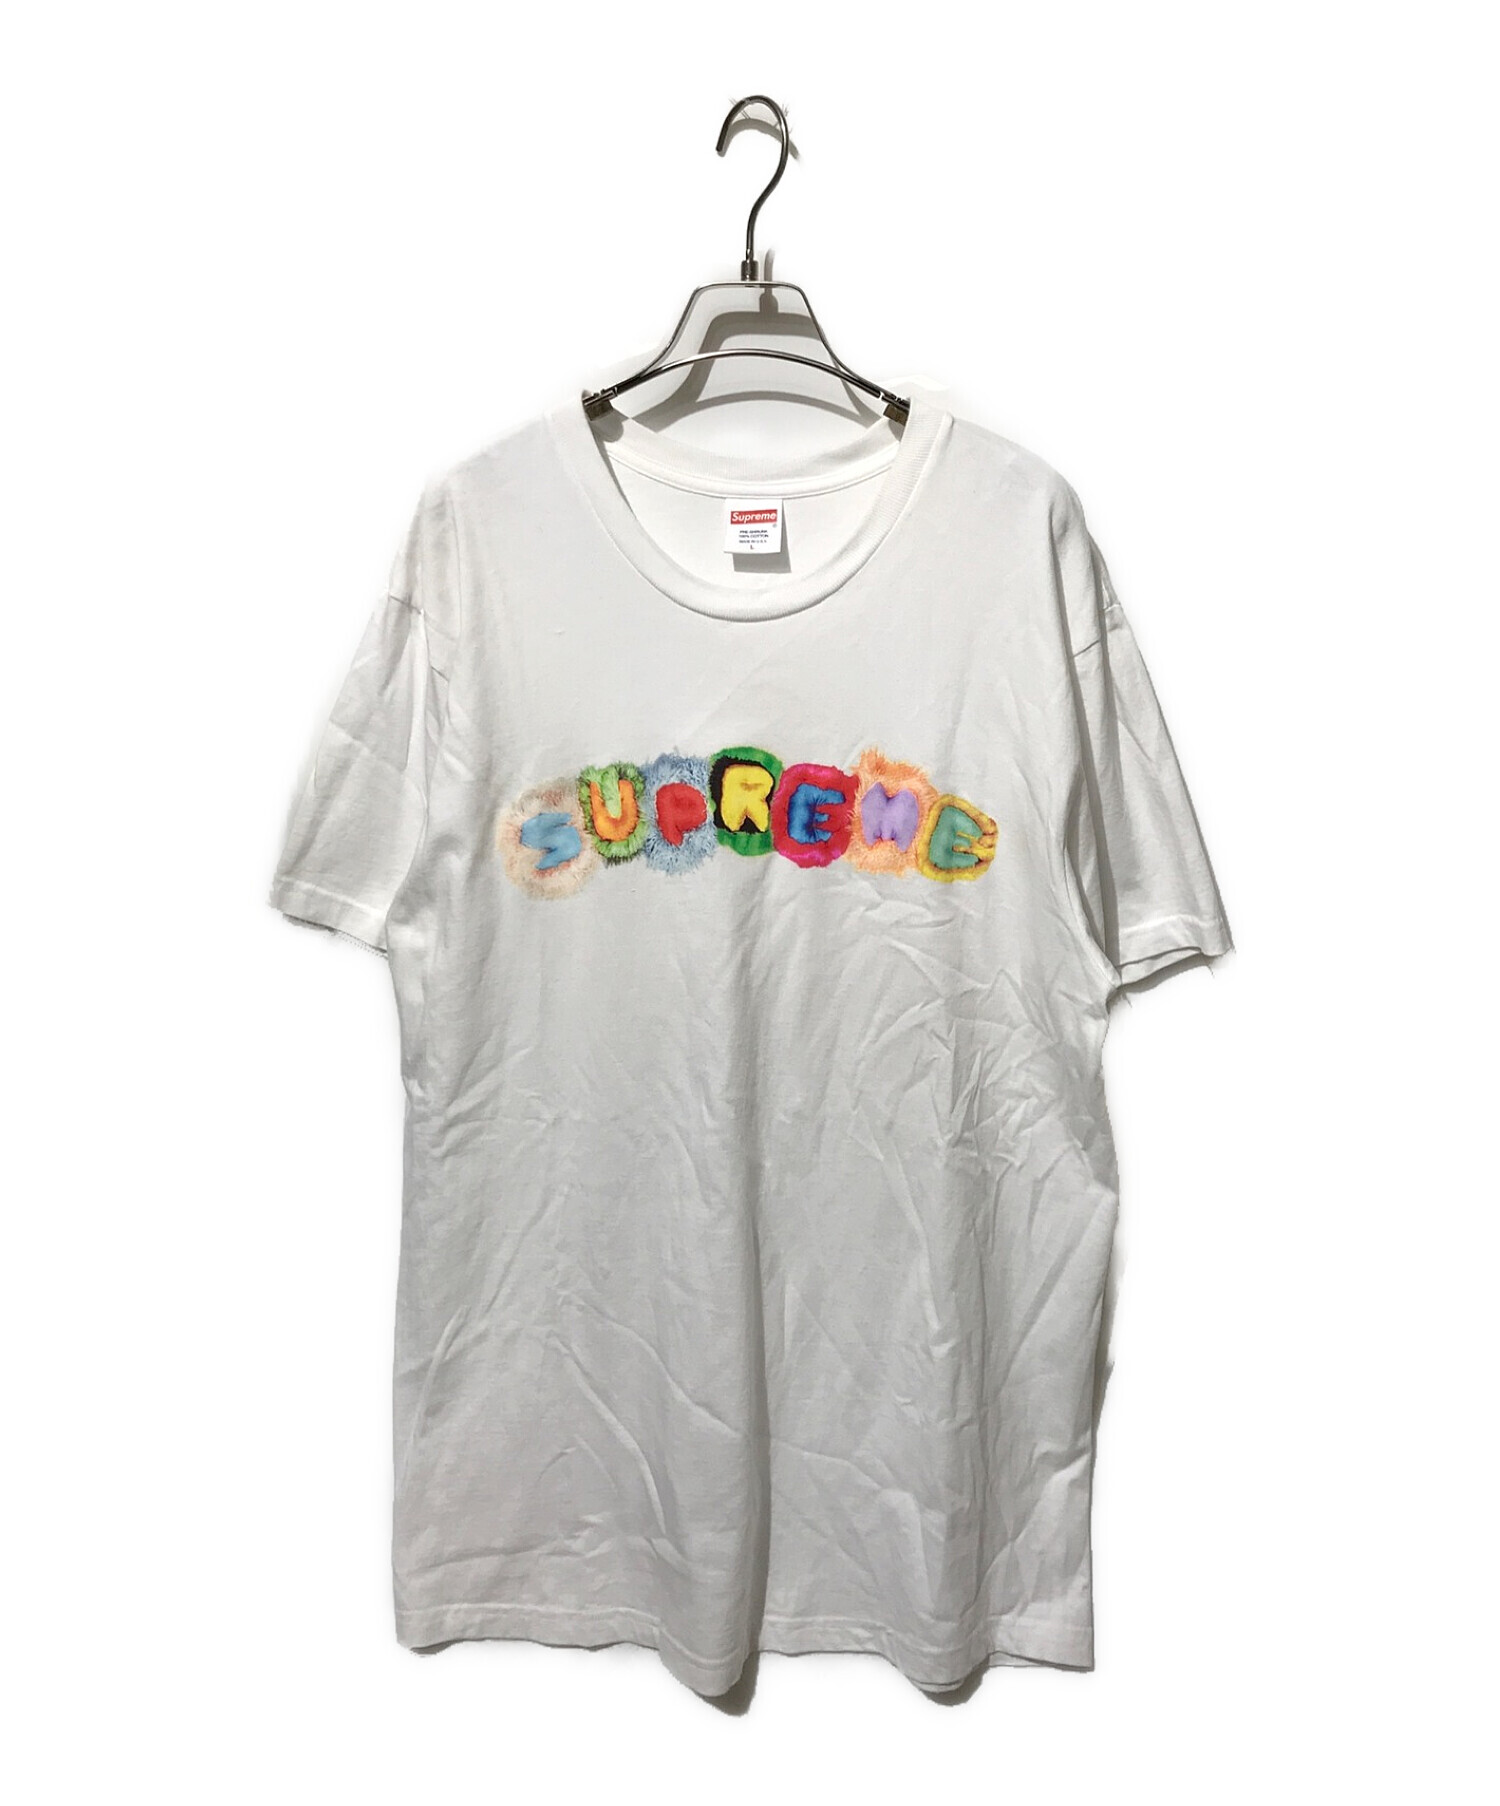 supreme Tシャツ Pillows Tee シュプリーム 白 ホワイト Sトップス